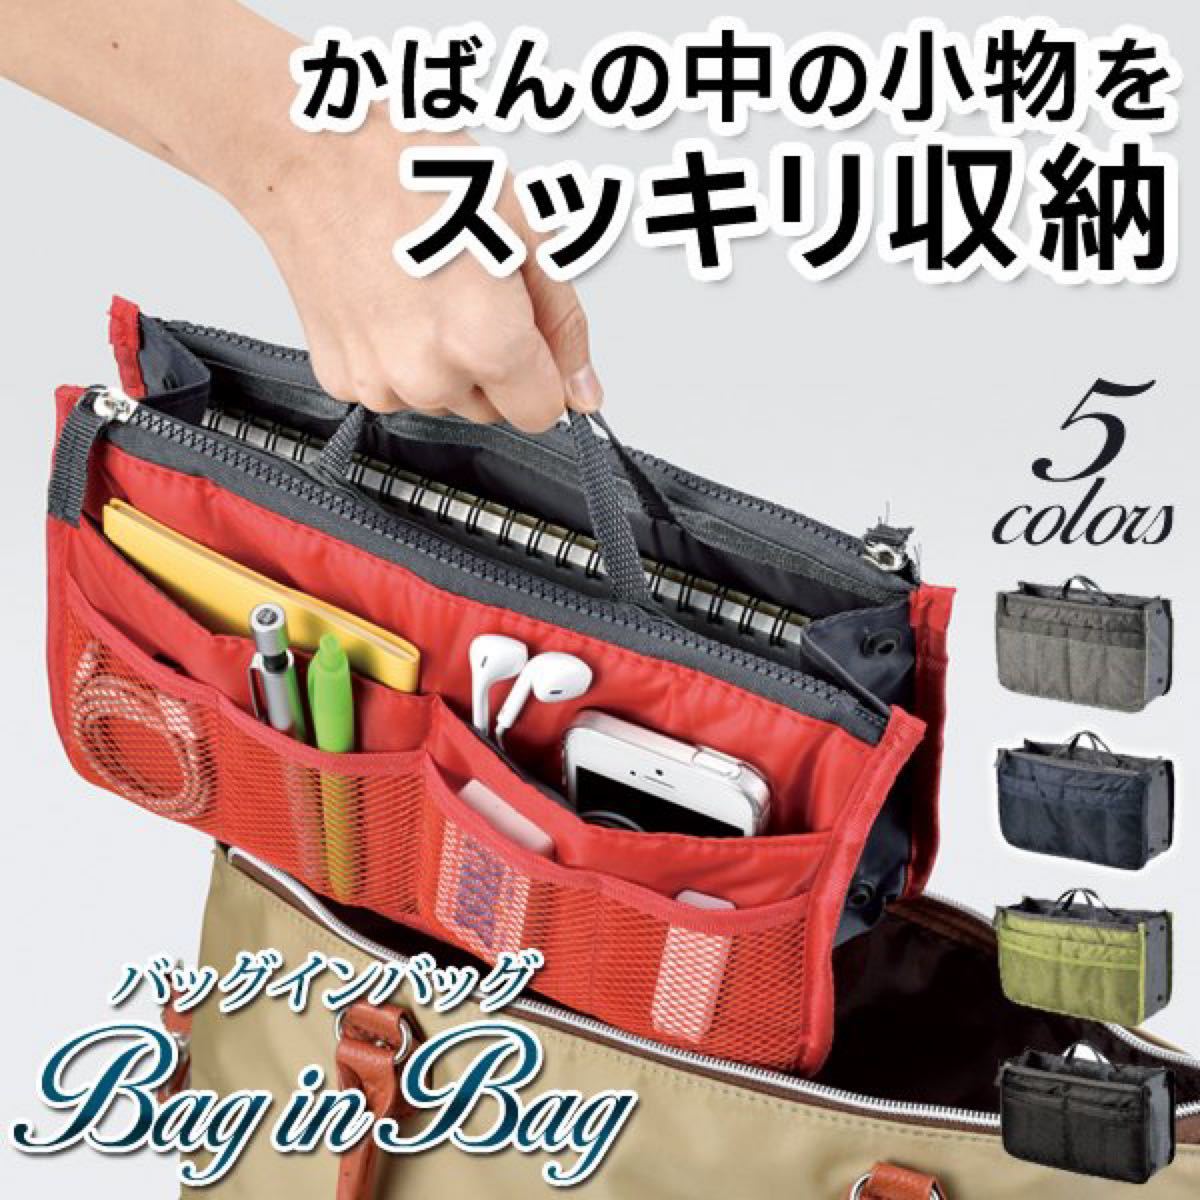 【新品未使用】バッグインバッグ かばんの中を整理整頓インナーバッグ/収納ポケット10個搭載/男女兼用 グレー